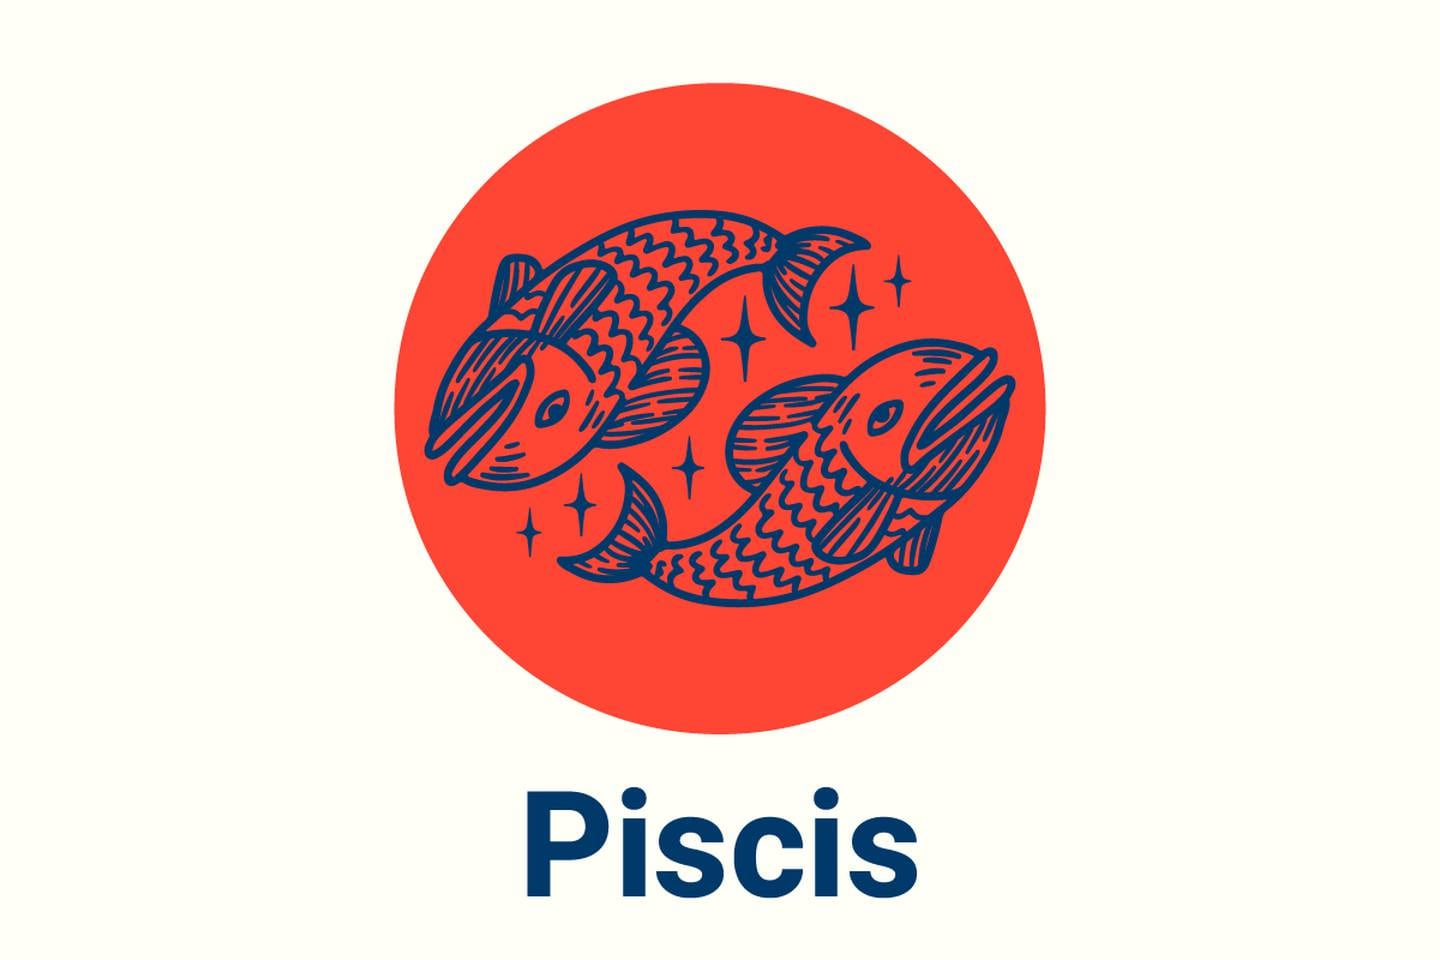 Imagen con el símbolo del signo zodiacal Piscis.